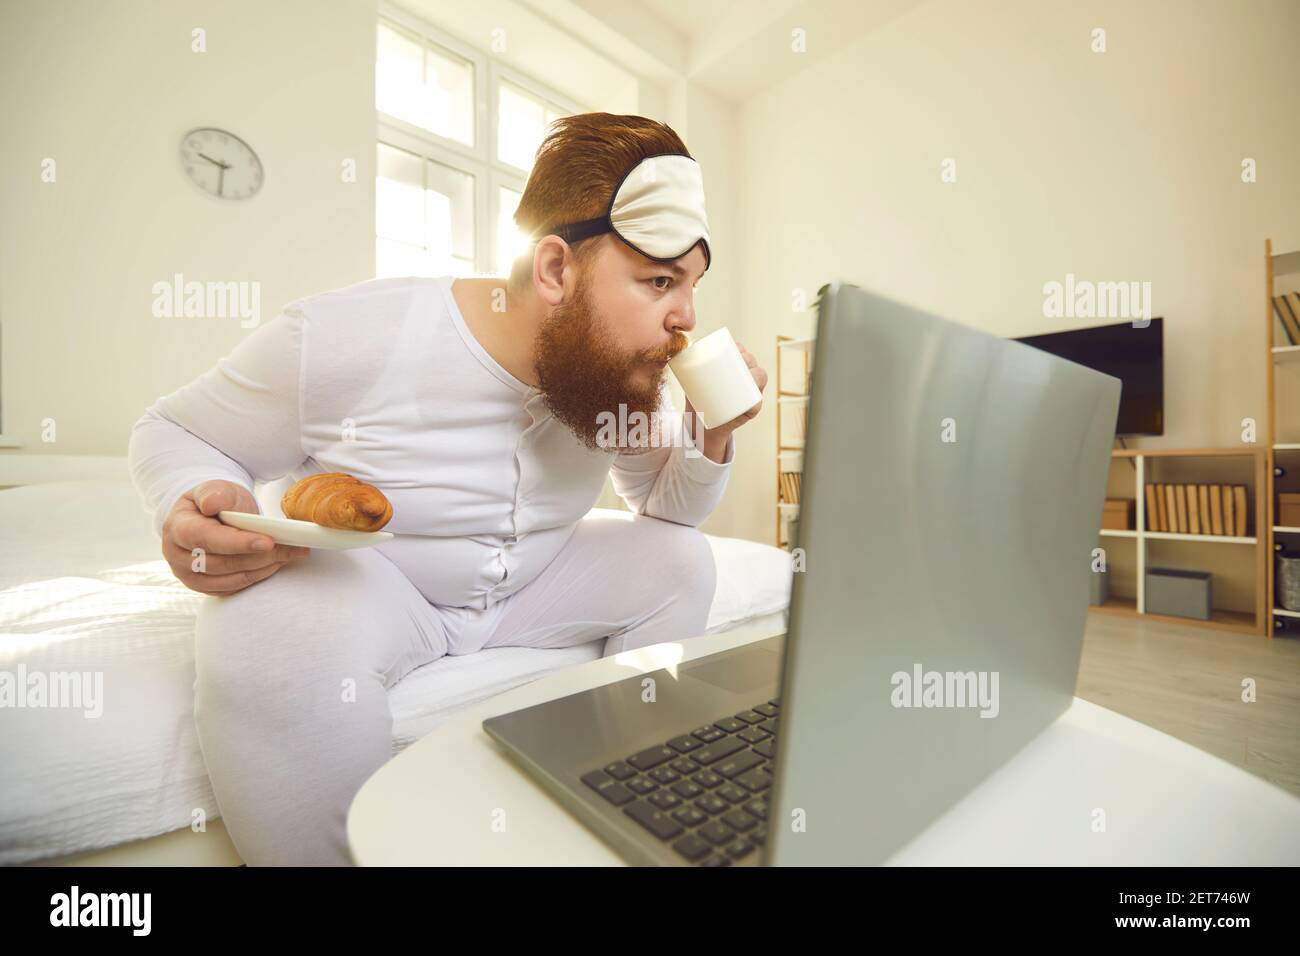 Drôle de barbu surpoids homme assis avec café et un petit pain pour petit déjeuner et regarder des films sur un ordinateur portable Banque D'Images